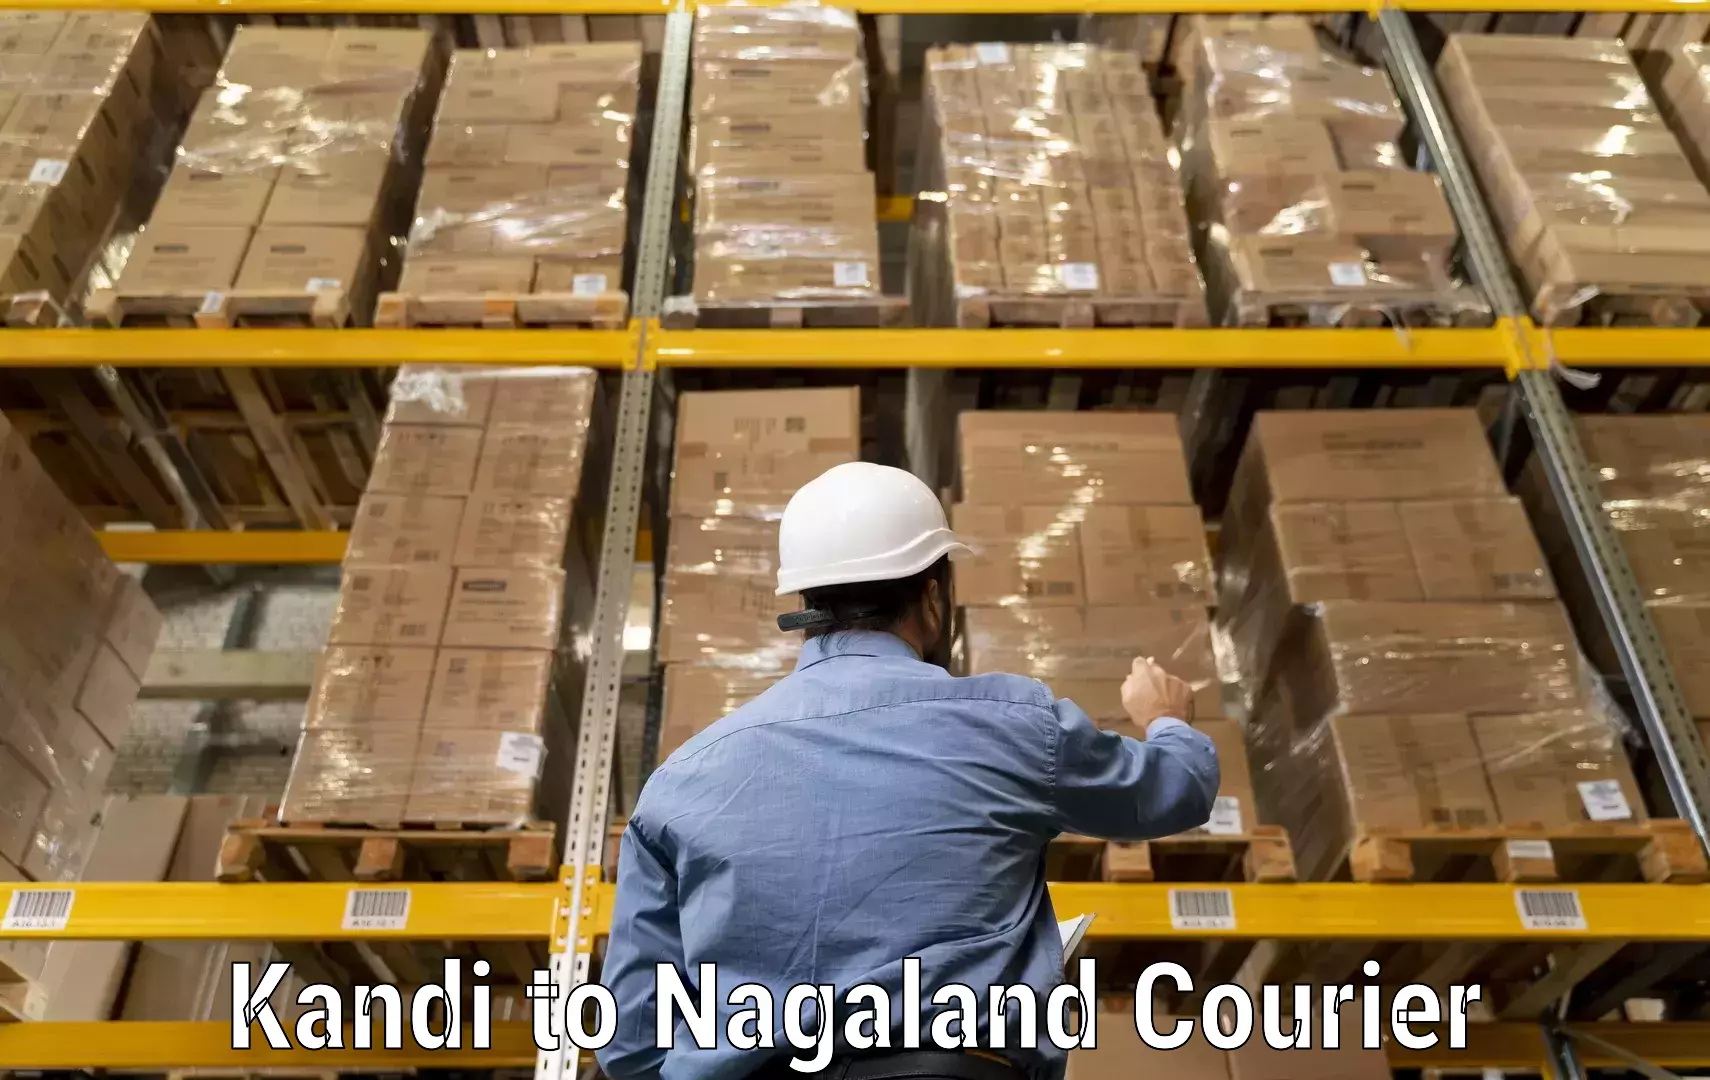 Customized shipping options Kandi to Longleng